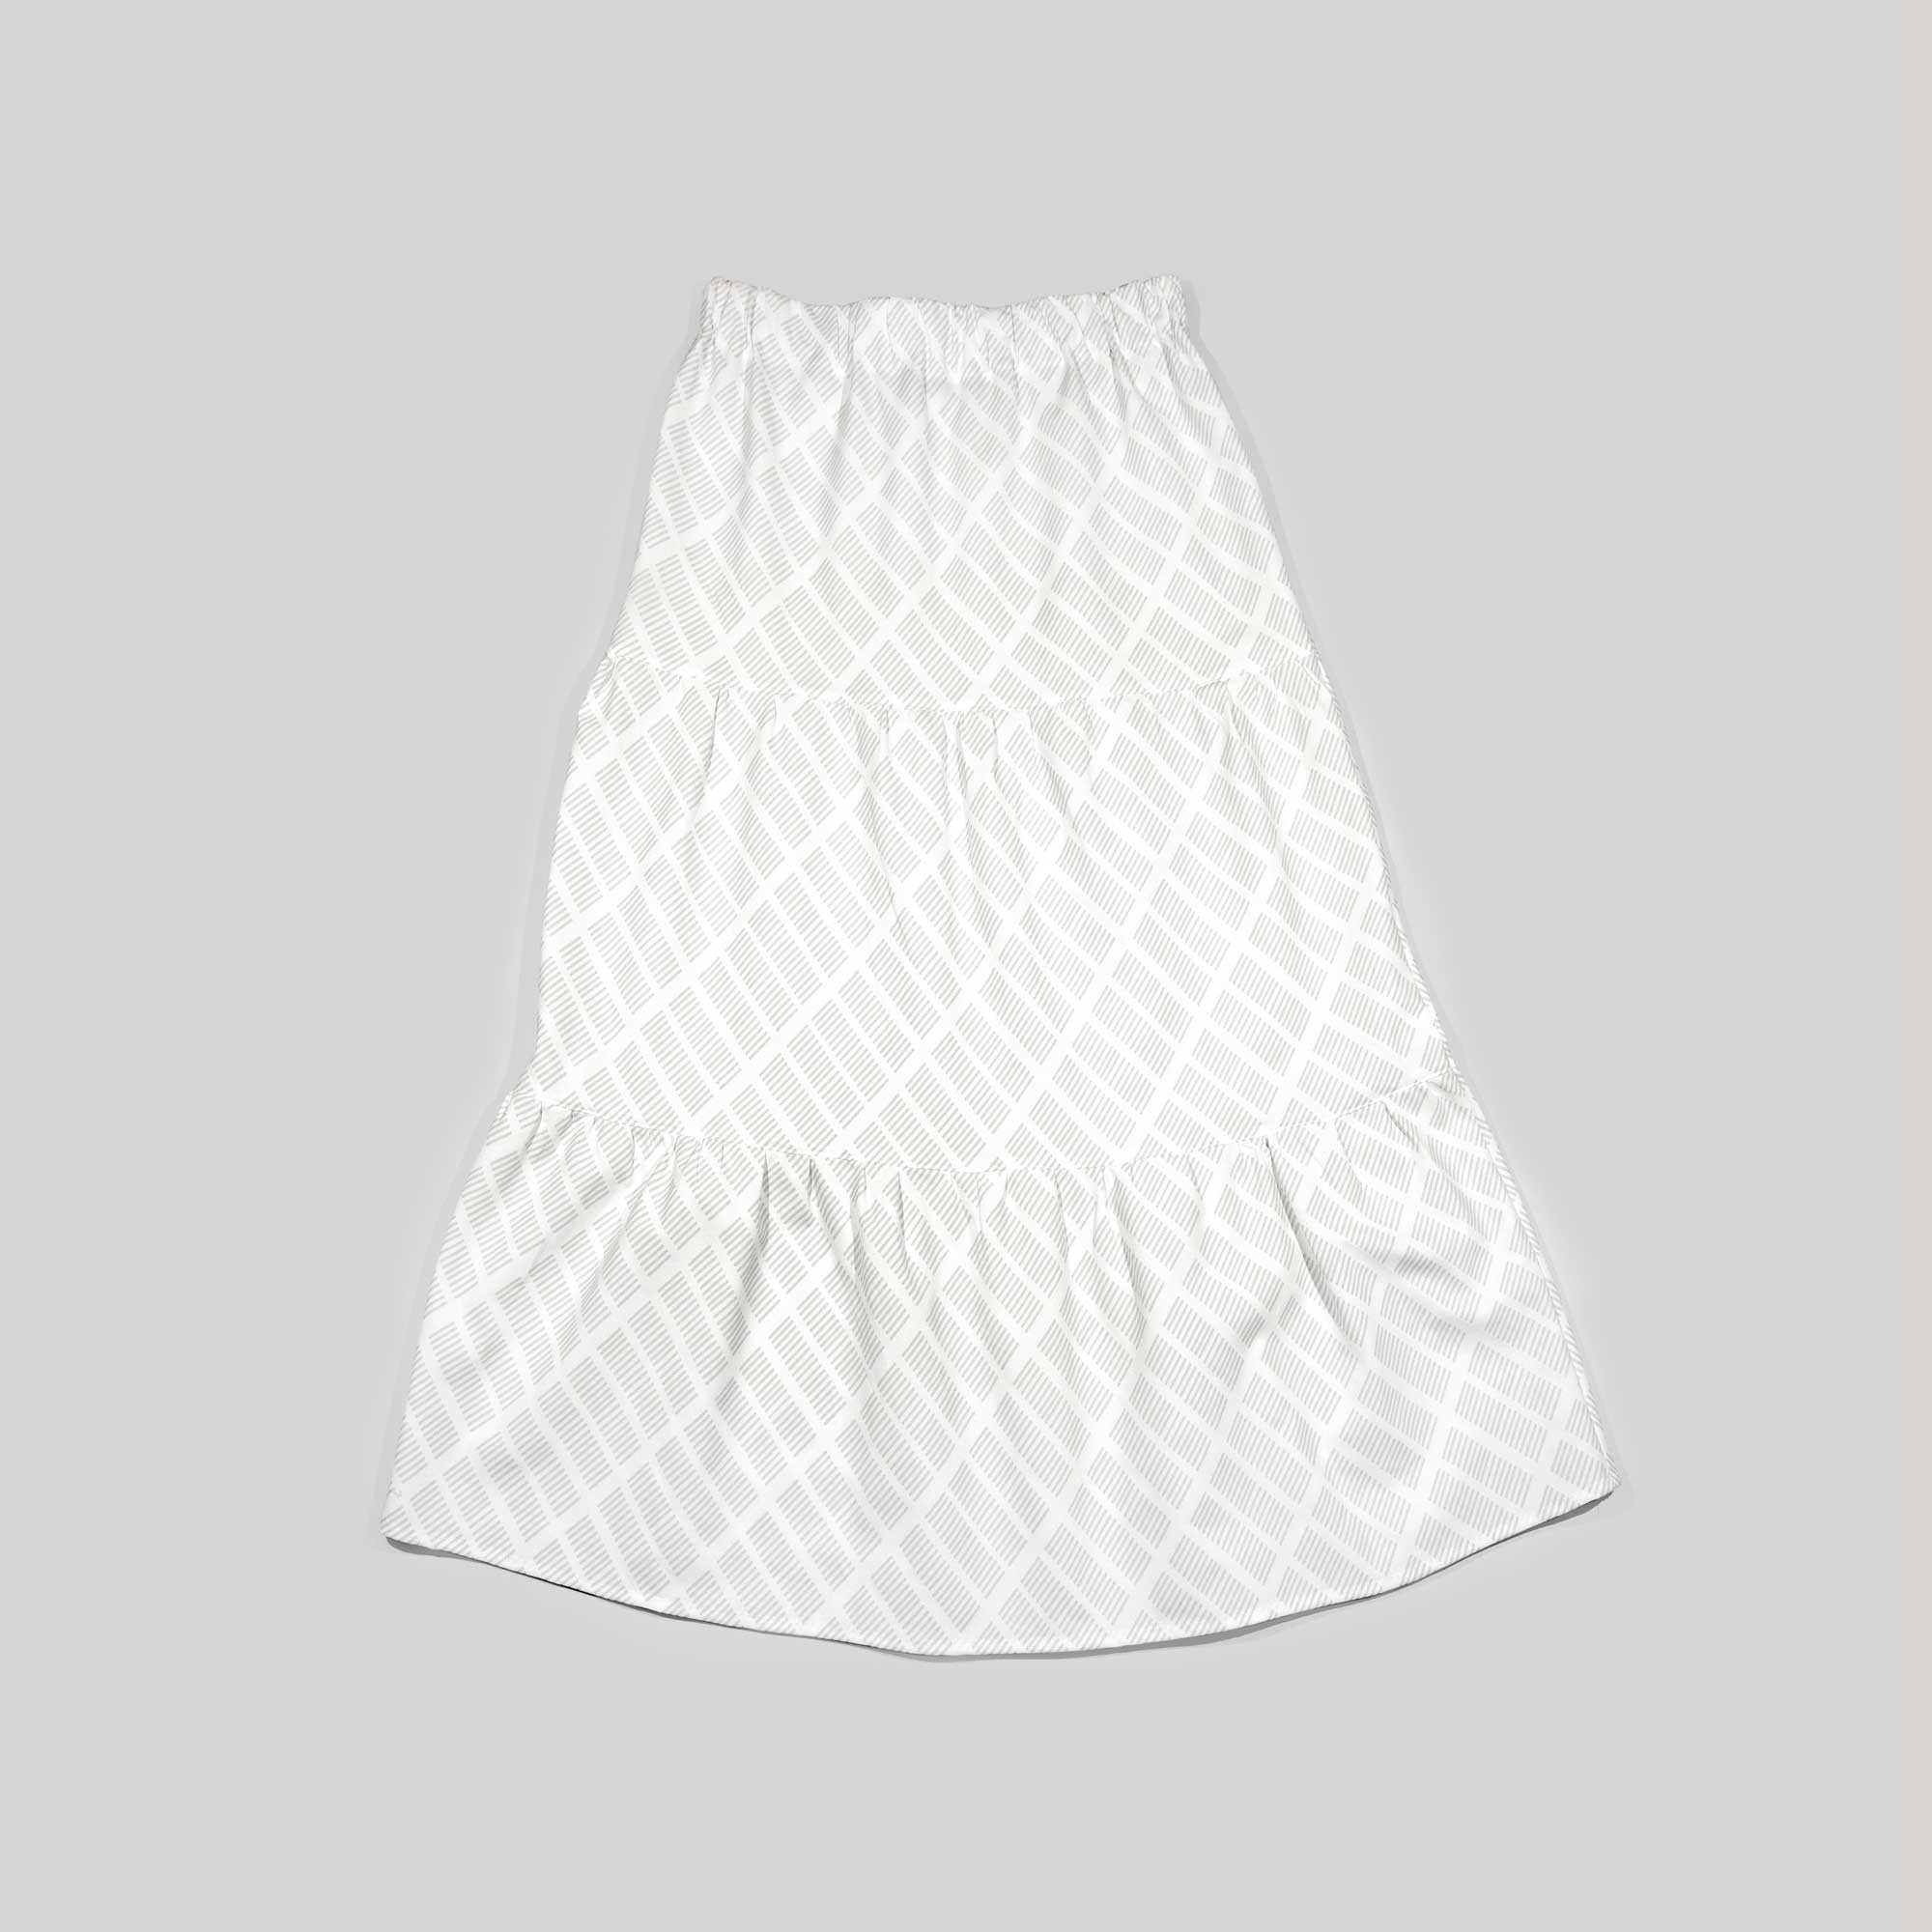 Sonya nederdel, Tile grå, design Anne Rosenberg, RosenbergCph